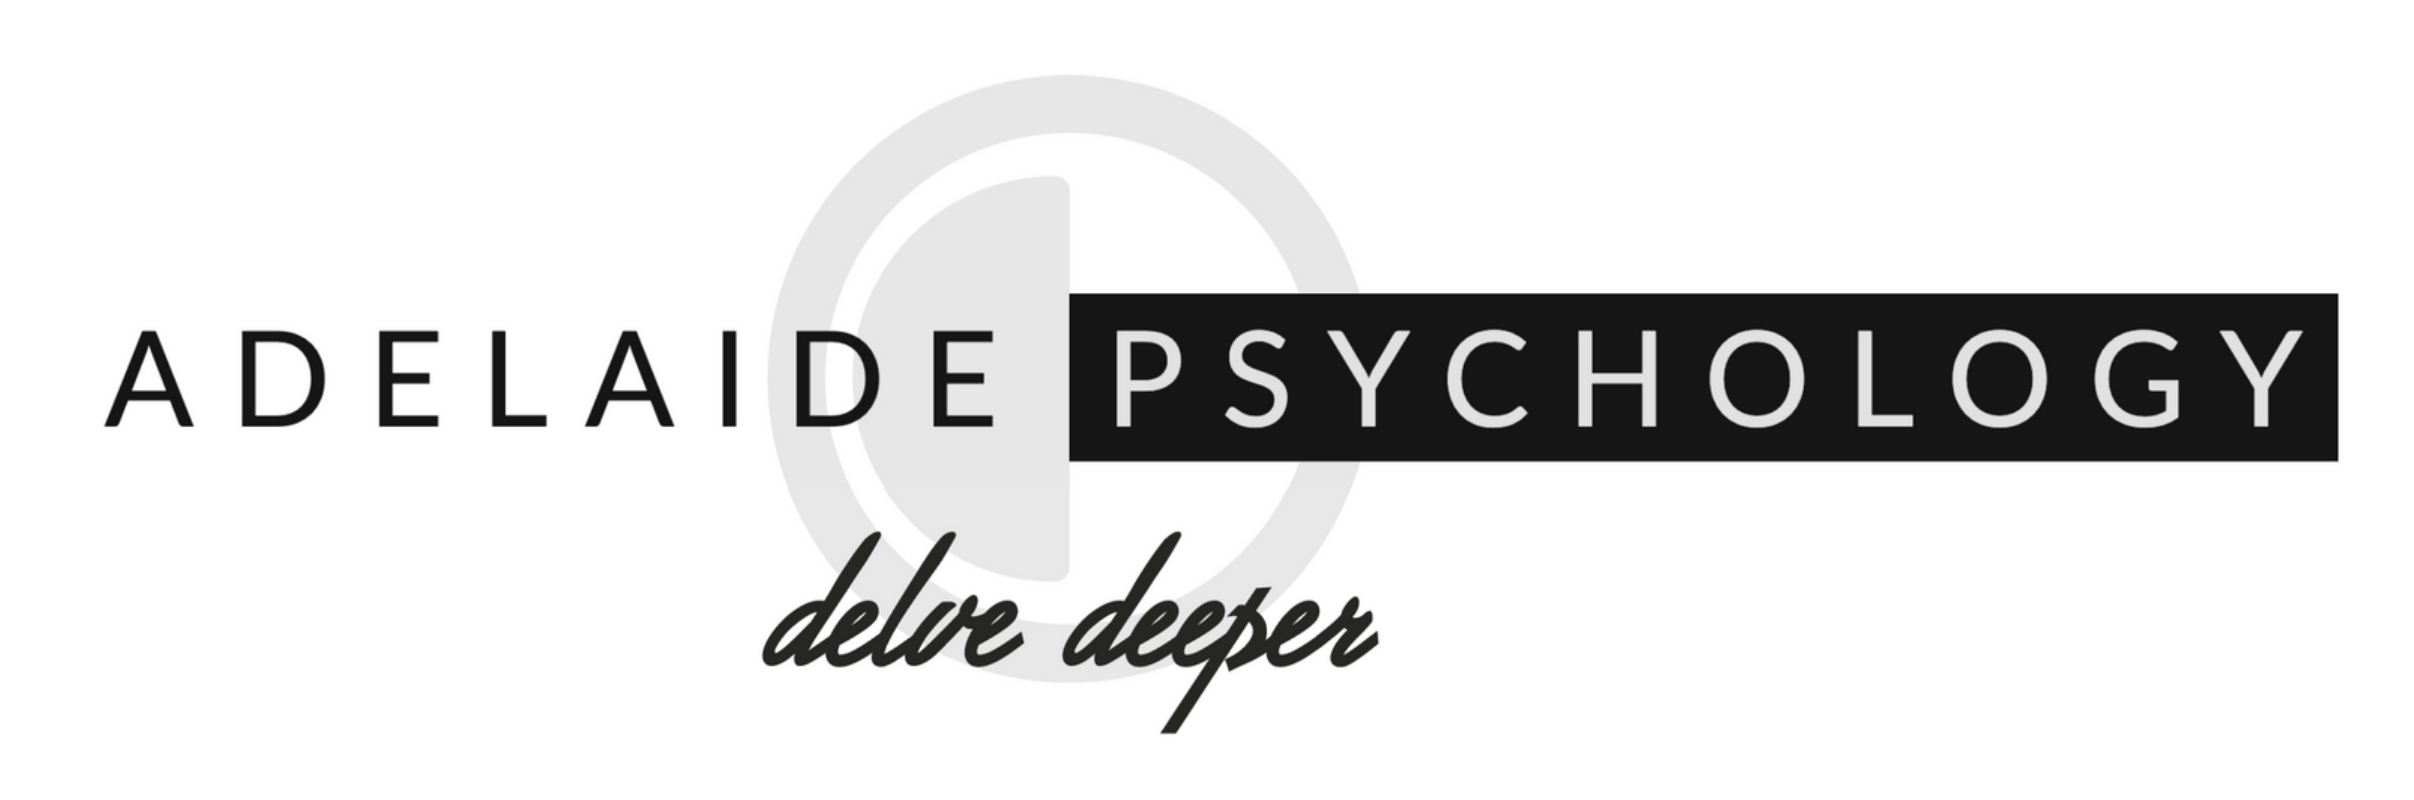 Adelaide Psychology Logo